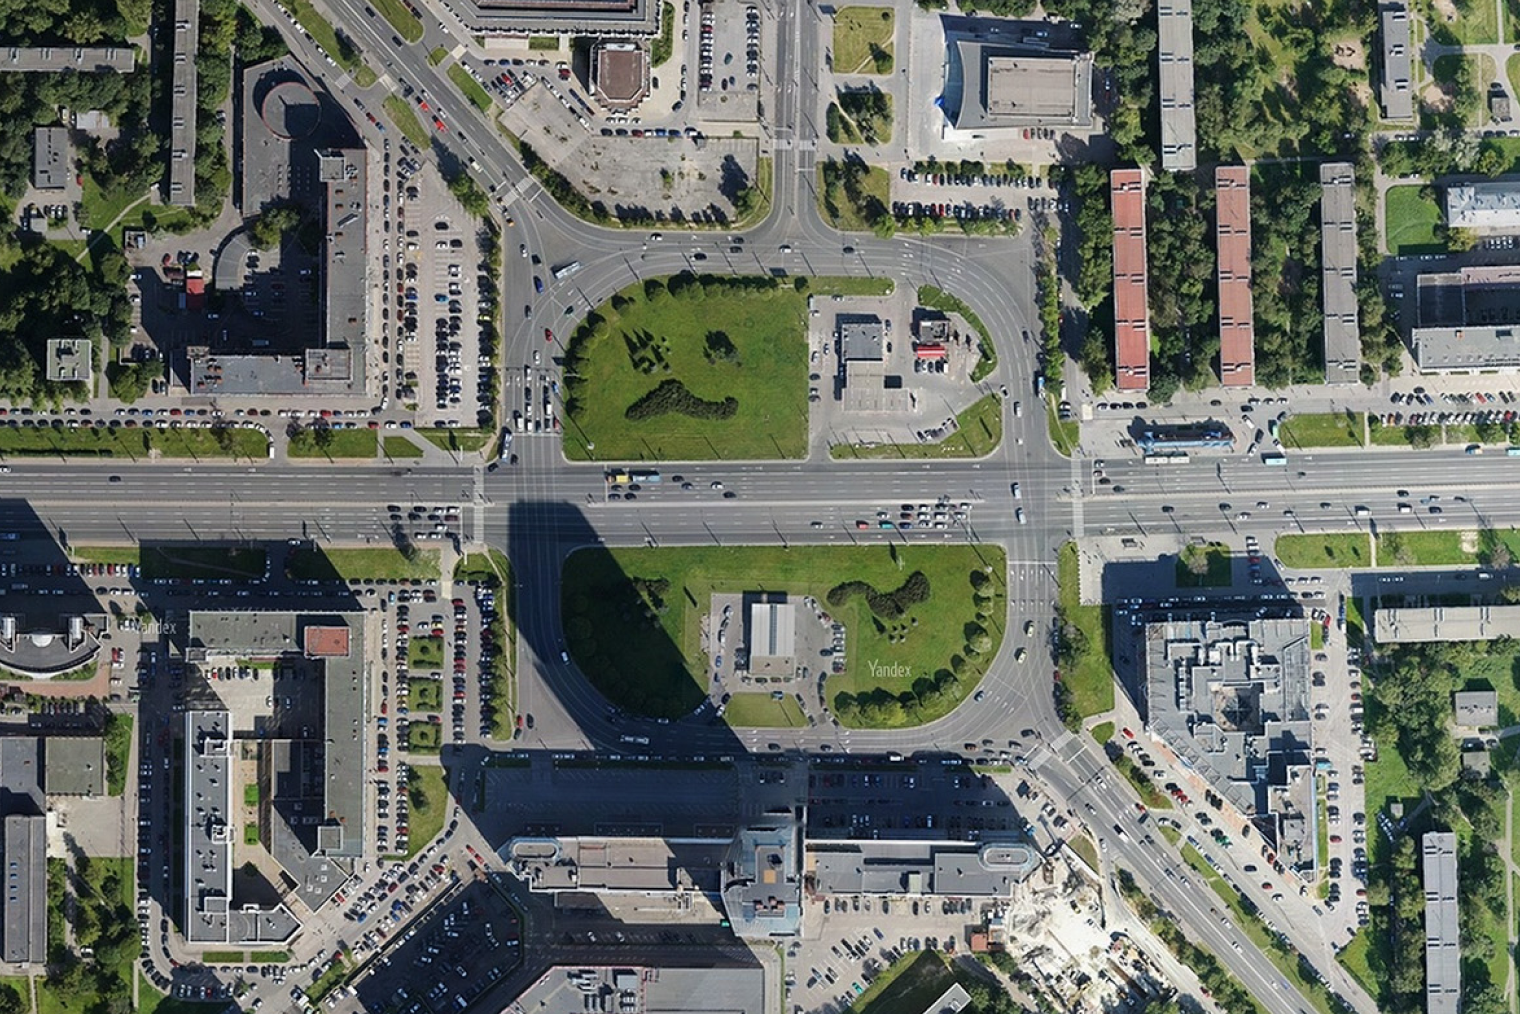 Перекресток на площади Конституции в Санкт-Петербурге похож на квадрат. Но движение на нем организовано по кольцевой схеме. Источник: «Яндекс-карты»